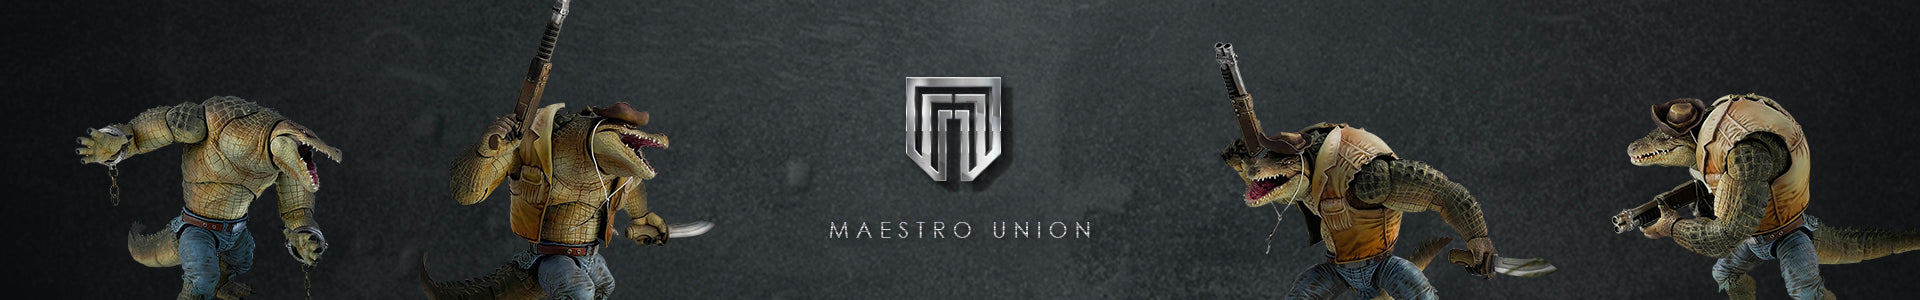 Maestro Union